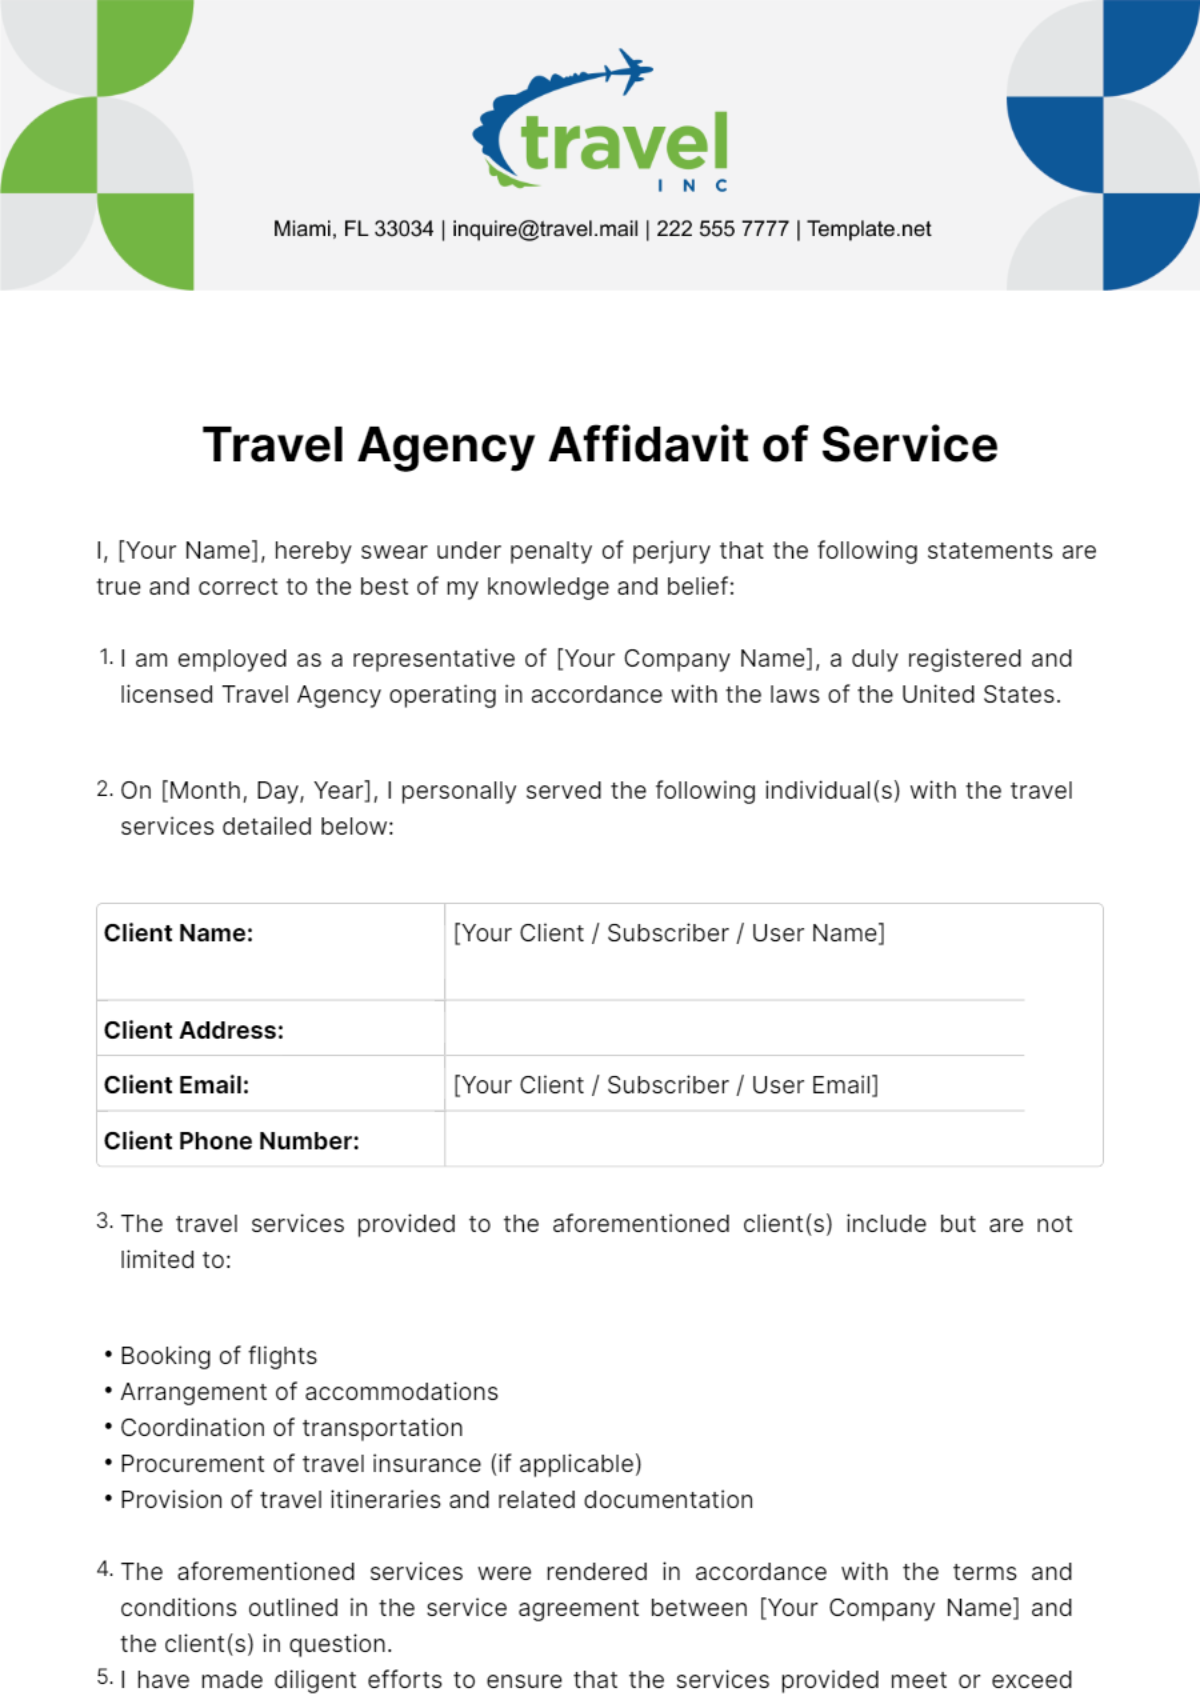 Travel Agency Affidavit of Service Template